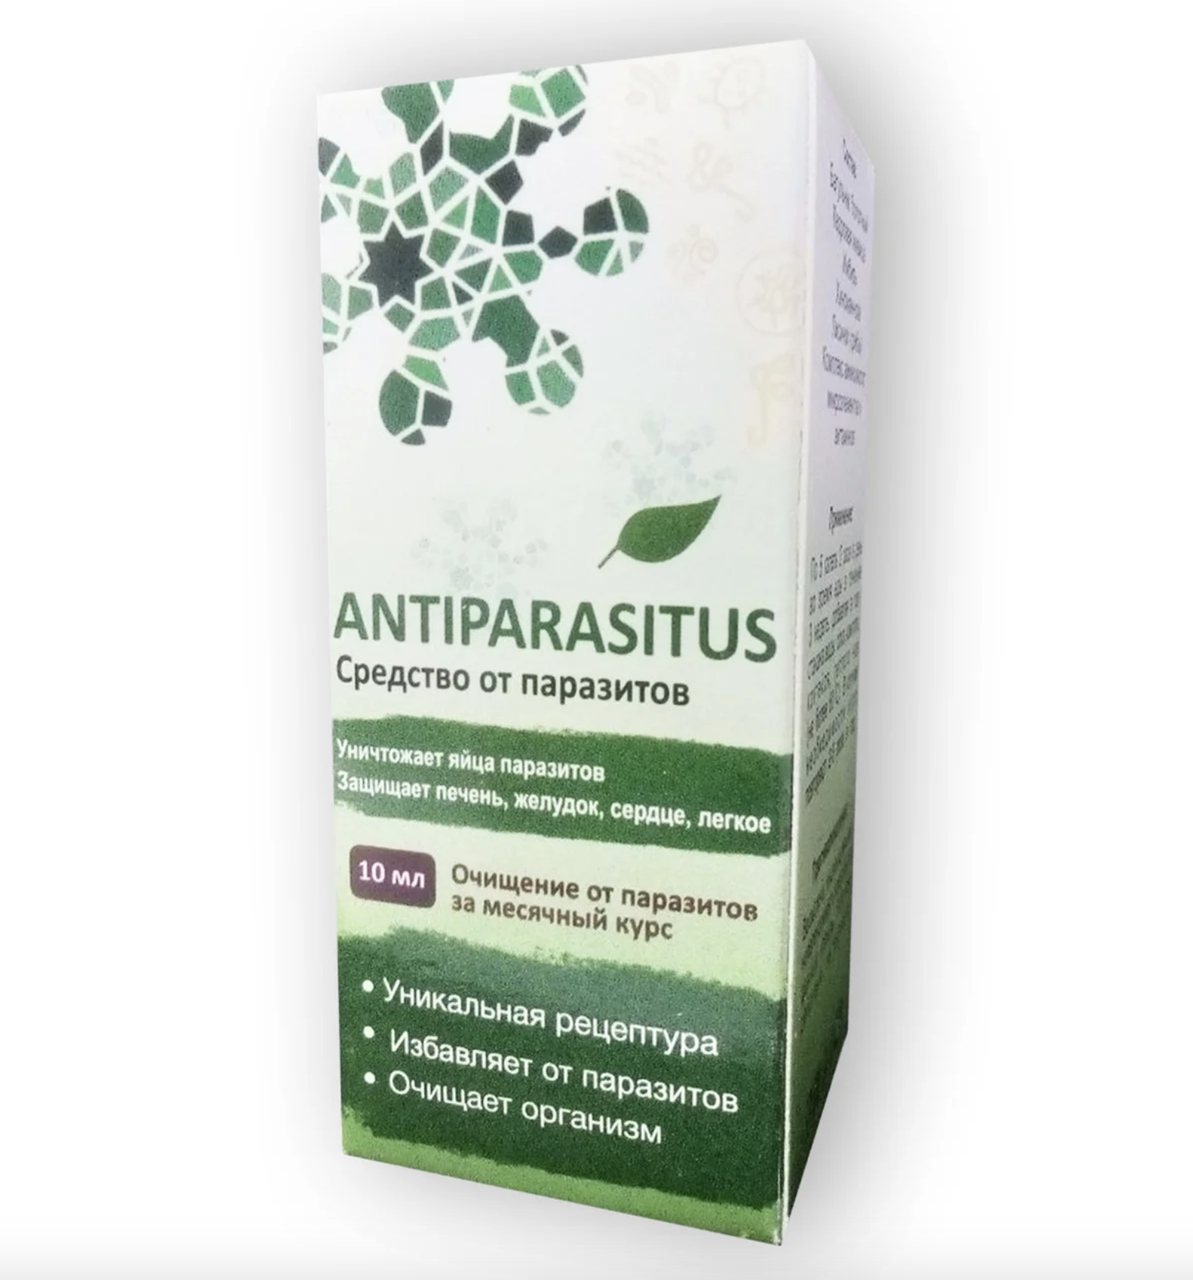 Antiparasitus - Краплі від паразитів (Антипаразитус)